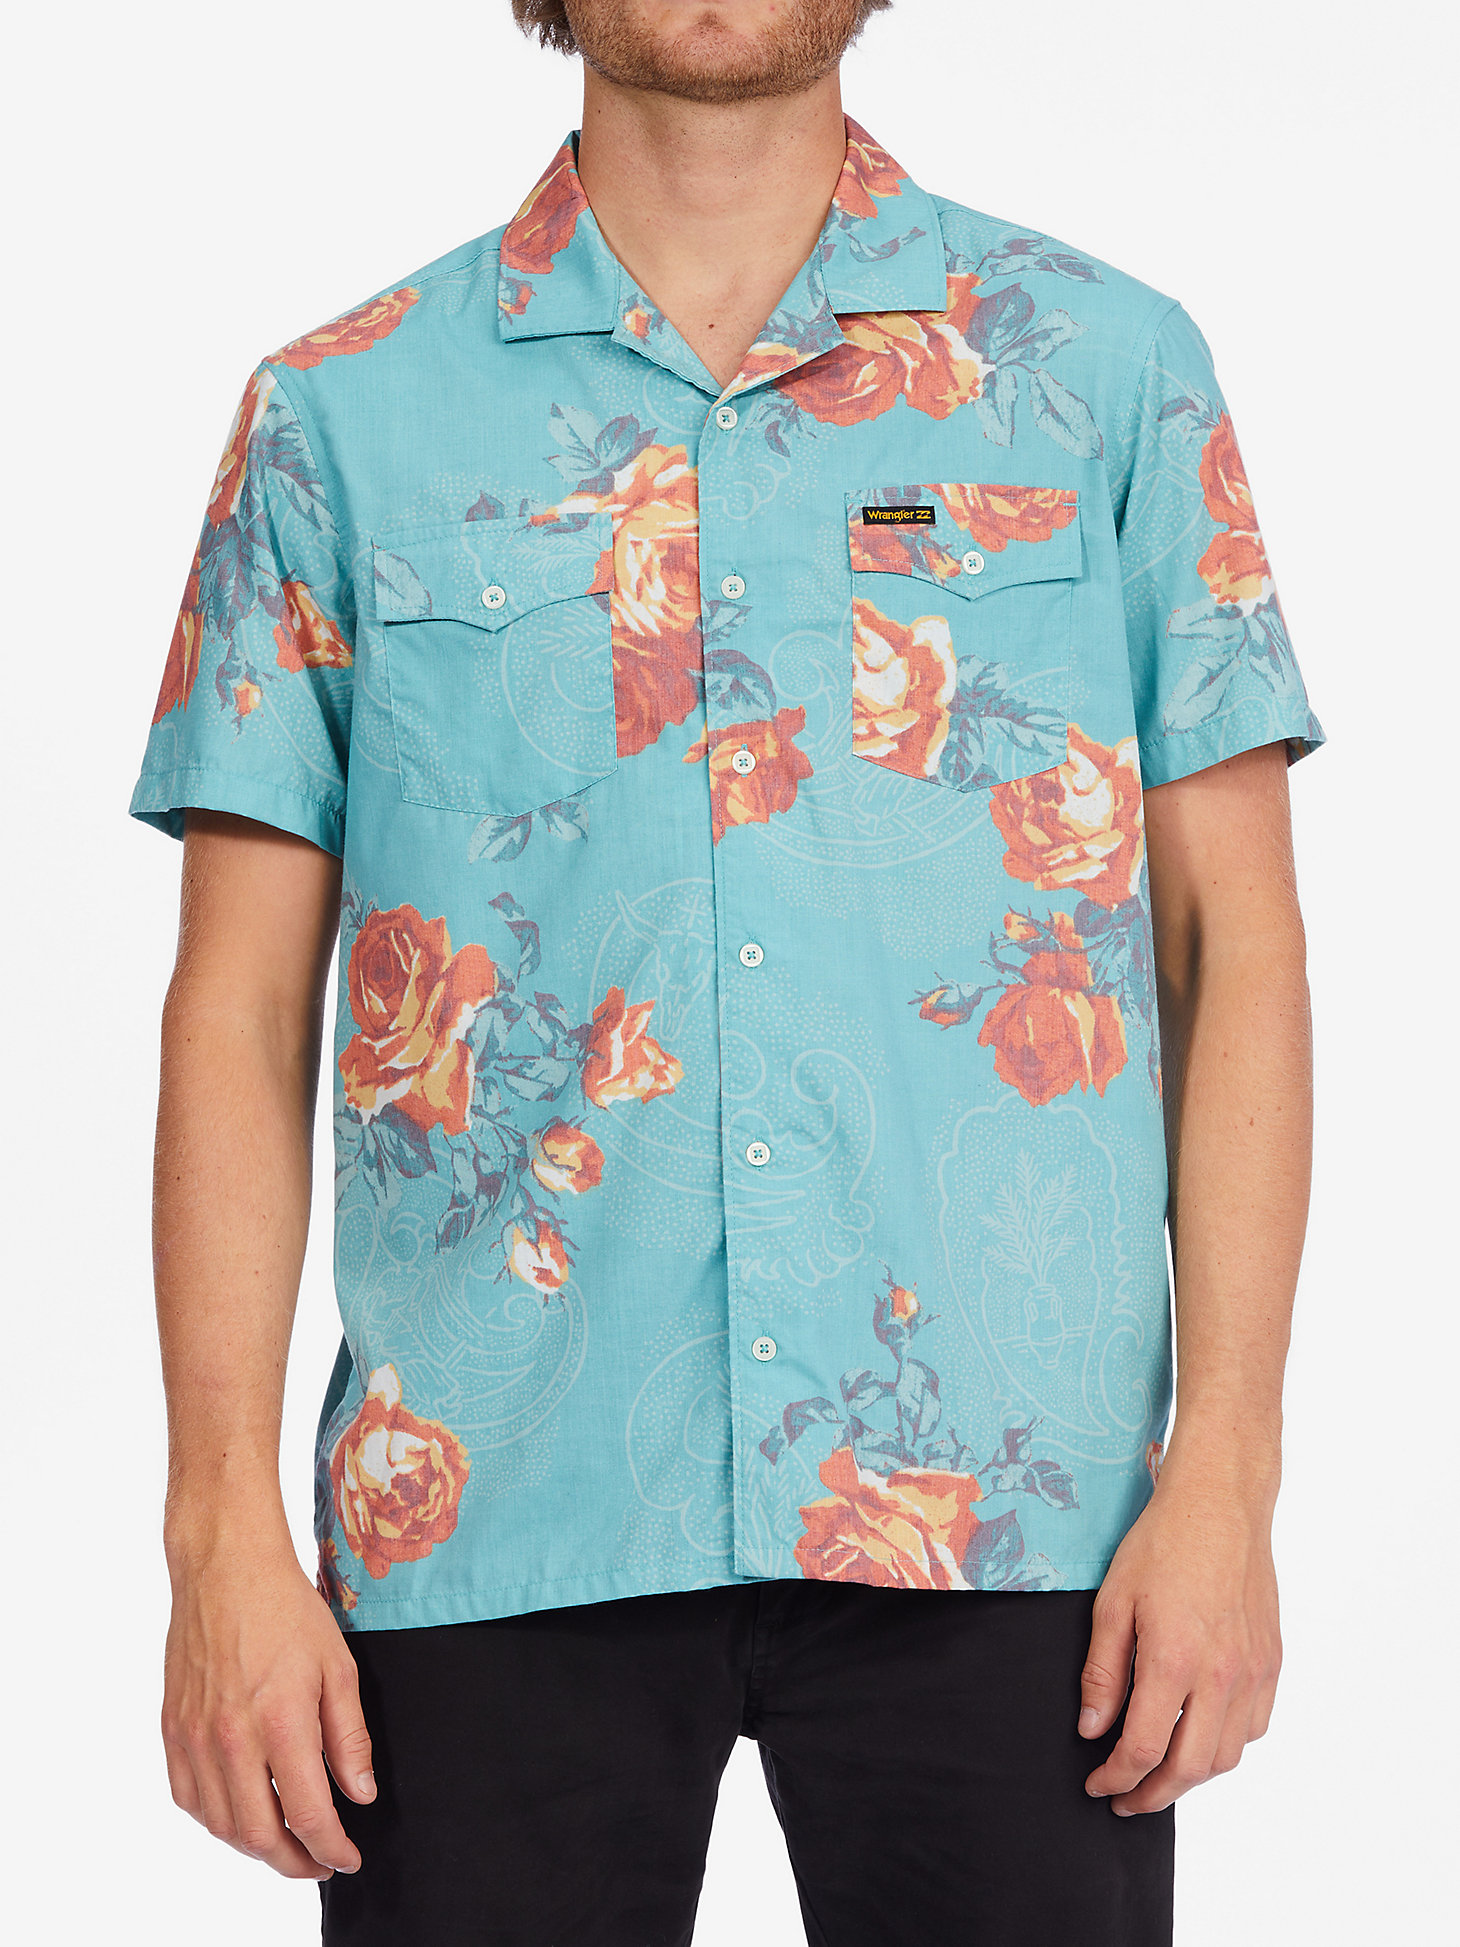 Billabong x Wrangler® Men's Bloom Button Up Shirt in Mint main view